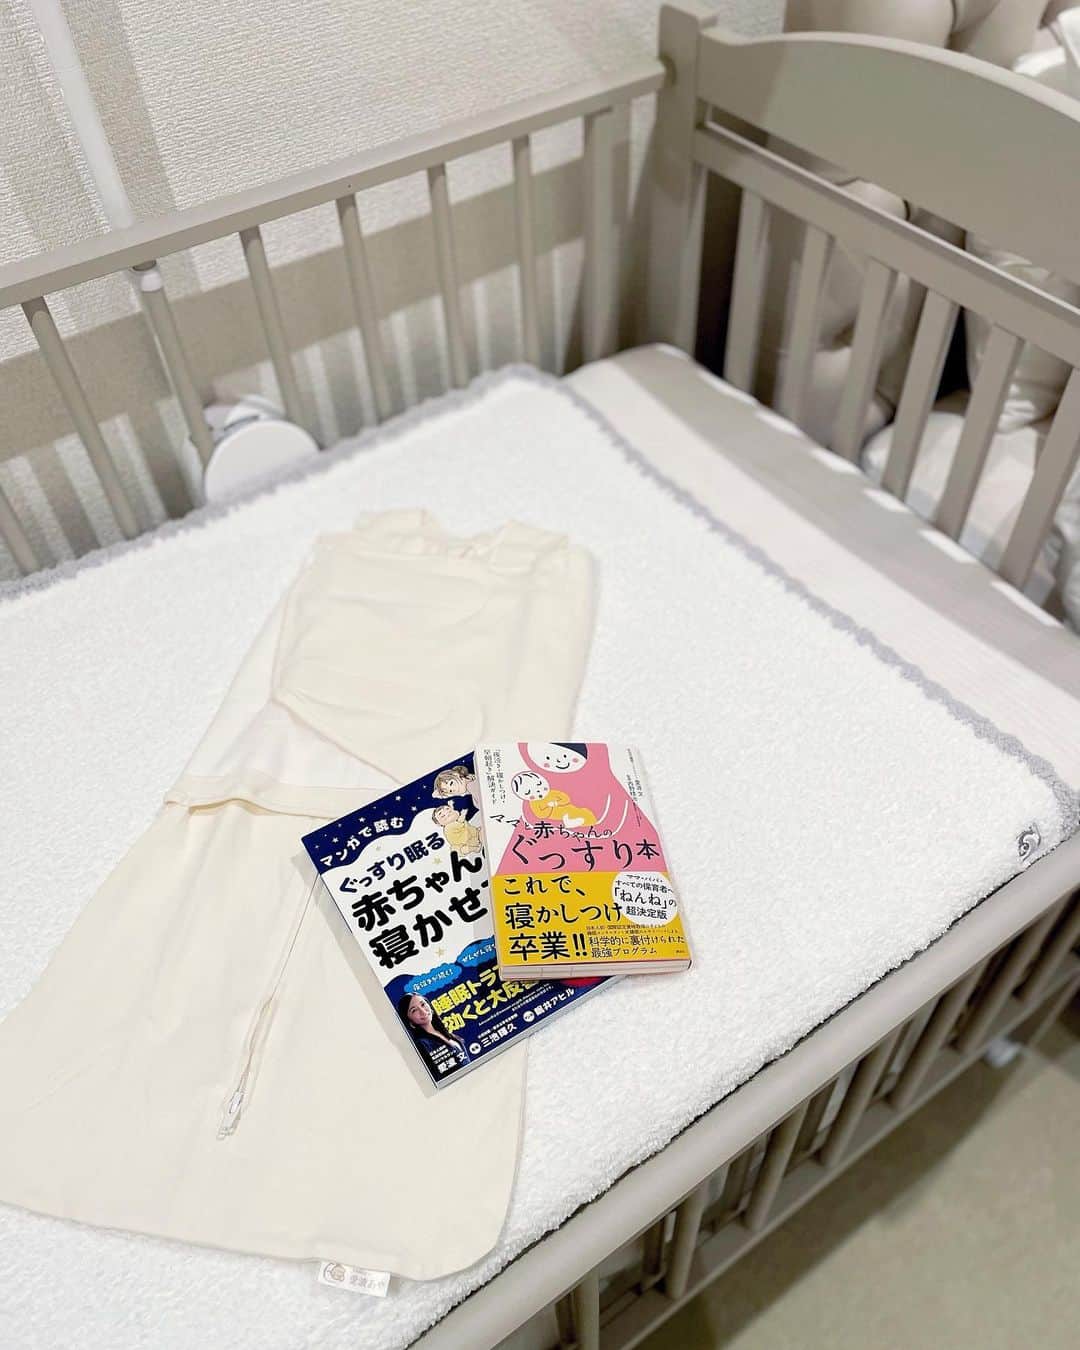 福田萌子さんのインスタグラム写真 - (福田萌子Instagram)「1日の3分の1を占める睡眠の時間は疲労回復のために質を上げる事がとても大事だと思っているので、昔から寝具や睡眠環境にはとても気を使っています😴🛏 なので1日のほとんどを寝て過ごす子どもにとって快適で安全な環境を整えられる様に、妊娠中に様々な本を読み情報を集めました🤲🏻 赤ちゃんにとっての睡眠は脳の発達と身体の発育に影響があるそうなので、なるべく質の良い睡眠をとらせてあげられるように🫧 生まれた日からルーティーンを作ってあげていたので、おかげで(生まれ持った本人の性格もあると思いますが)セルフねんねも得意で、一回の睡眠は2.5〜4時間、夜中もオムツ変えと授乳時間の30分だけでまた眠りにつきます😊 (もちろんたまーにぐずる事もありますが、今のところ理由がなく泣く事はほとんどないかな) なので私も途中に起きますが、毎日合計8時間は寝ています💤 新生児と暮らすのは初めてで、親戚にも小さな子がいなかったのでこれが普通だと思っていたら、子どものいるお友達に毎回びっくりされるので、参考になるか解りませんが私の行っている事を紹介します✨  ▼▼▼▼▼▼▼ ①快適に過ごせる室温と湿度を保つ☝🏻 温度は20℃〜24℃ / 湿度は40%〜60% (肌着やスリーパーなど、着るものによります) 赤ちゃんは体温調節がまだ未熟なので、その日の気温や湿度をみながら室内環境を一定に保ってあげる快適に保ってあげる事が大切です✨  ② お部屋を真っ暗にする🌚 光が入ると脳が反応してしまうので、朝も夜も寝室は真っ暗で光が入らないようにしています。  ③おくるみスリーパー / スワドルを着用させる🧵 自分の手足を認識していない赤ちゃんのモロー反射で起きるのを防いであげるために🫶🏻タオルなどでくるむと股関節脱臼になるリスクがあるので手はホールドさせ足が自由に動くタイプのものを幾つか使っています😊  ④泣いてもまずは見守る🫧 寝ている間に泣いてもまずは様子を見て、それでも泣くなら声であやして、それでもダメなら抱っこする🤱大人も寝言を言う事がありますよね！その時に『どうしたの‼️❓』と体を揺さぶられたら目が覚めちゃうはず。赤ちゃんも寝言泣きをする事があると思うので、まずは様子を見ています✨(7割ぐらい寝言泣きでそのまままた眠りについています)  ⑤起きている時間を40分以内に💤 新生児が機嫌良く起きていられる時間は40分。(年齢によって違います)それ以上起きている時間が長いと疲れ過ぎて眠れなくなるので、なるべく40分以内に眠れるようにオムツ替え、授乳、お風呂などが終わるように時間をマネージしています🤲🏻  ⑥ルーティーンをつくる♻️ この世界にまだ慣れておらず不安定な赤ちゃんだから、大人以上に習慣を作ってあげる事が大切です✨【お風呂(時間も大体同じ)→マッサージ→授乳→1曲歌う(歌わない時はクラシックを聞かせたり)→ベッドに置く→寝る】というふうにしています🙋‍♀️  そして、赤ちゃんの安全を確保するために、ベッドの上には何も置かず掛け布団などの寝具も使っていません。(窒息死の原因になるそうです！) ベッドには見守りカメラを設置しているので別のお部屋にいても常に様子を見ています☺️ ベッドの下には体動センサーも設置👌 デロンギと加湿器で室温湿度を調整して、Dysonの空気清浄機で子どもに有害なホルムアルデヒドを除去🌬 日中起きてリビングにいる時は1枚目のお写真の右側にあるDOCKATOTに寝かせています🛏  ▲▲▲▲▲▲▲  脳の発達と身体の発育のために、そして何より赤ちゃんが1日を快適に楽しく生きていられるように、日々模索中🤲🏻✨ 眠たいのにまだ外の世界に順応出来ずうまく眠れない未熟な赤ちゃんの寝る力を、少しでもサポート出来たらいいな💓 私もまだまだ手探りですが、事前に学んだ事を実践しながらの育児を楽しんでいます😊 乳幼児睡眠コンサルタントの愛波あやさんの本からの学びがとても大きかったので、セルフねんねが出来ずにで悩んでいらっしゃる方はぜひ読んでみてくださいね🫶🏻  #セルフねんね #睡眠 #育児 #新生児のいる生活 #新生児グッズ #睡眠の質」1月21日 17時35分 - moekofukuda